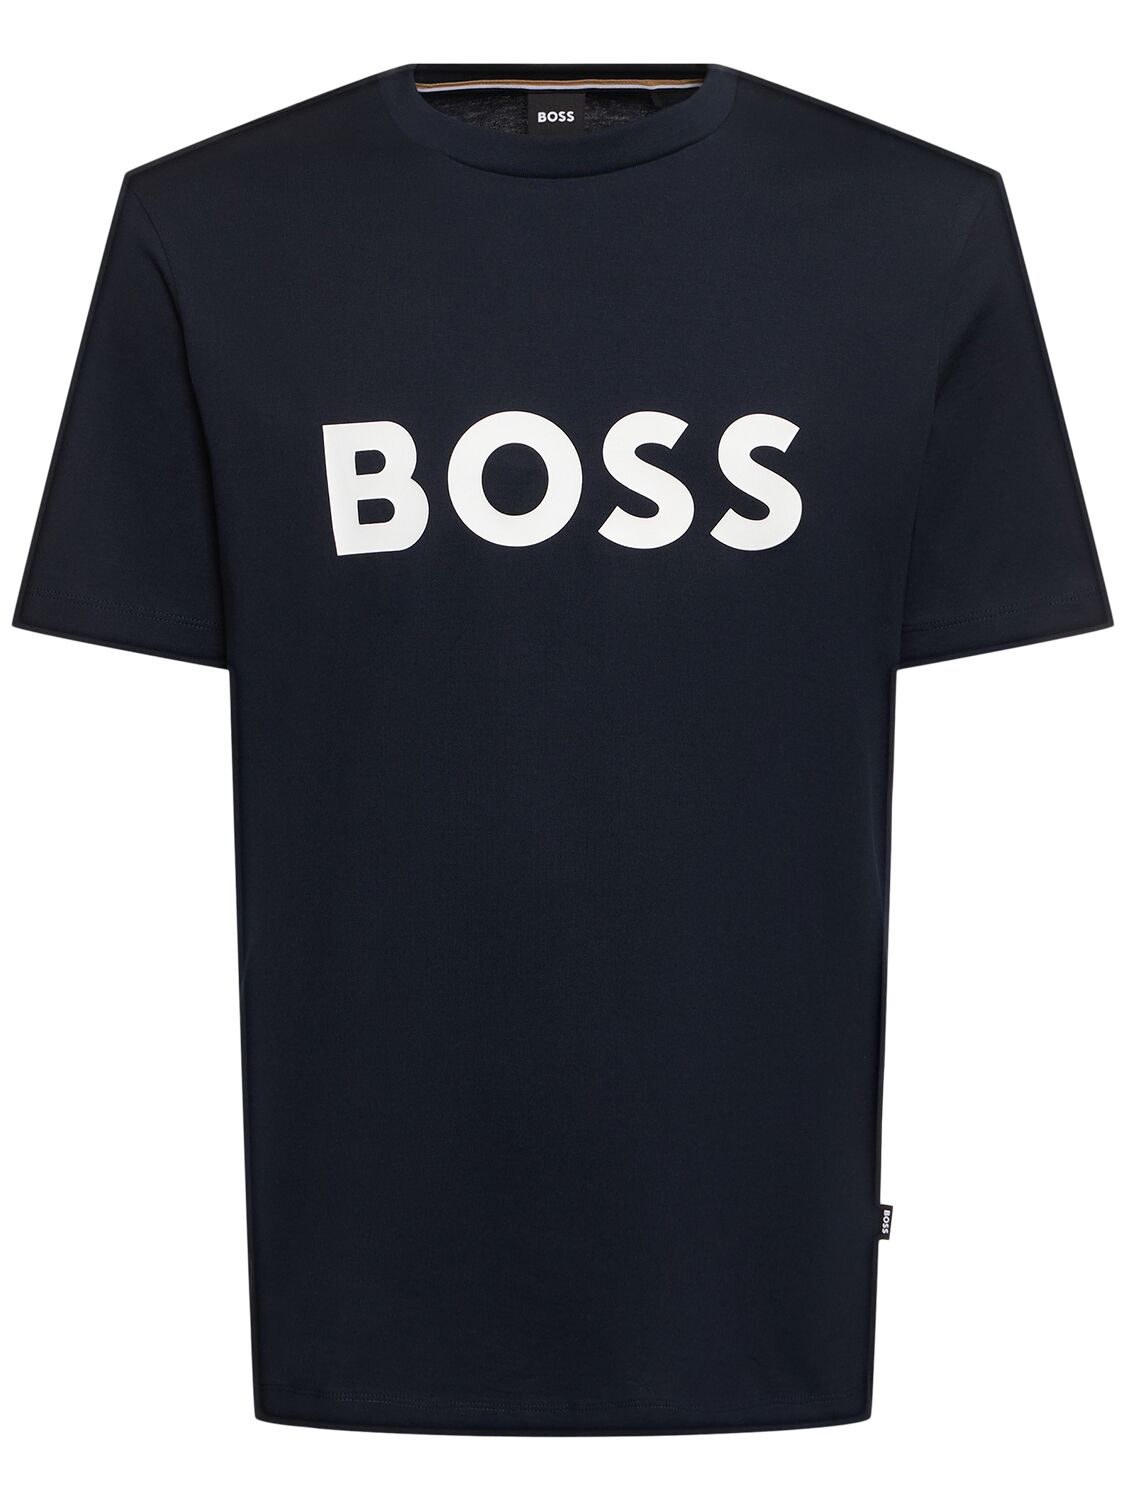 Hugo Boss Tiburt 354 Logo Cotton T-shirt In Black